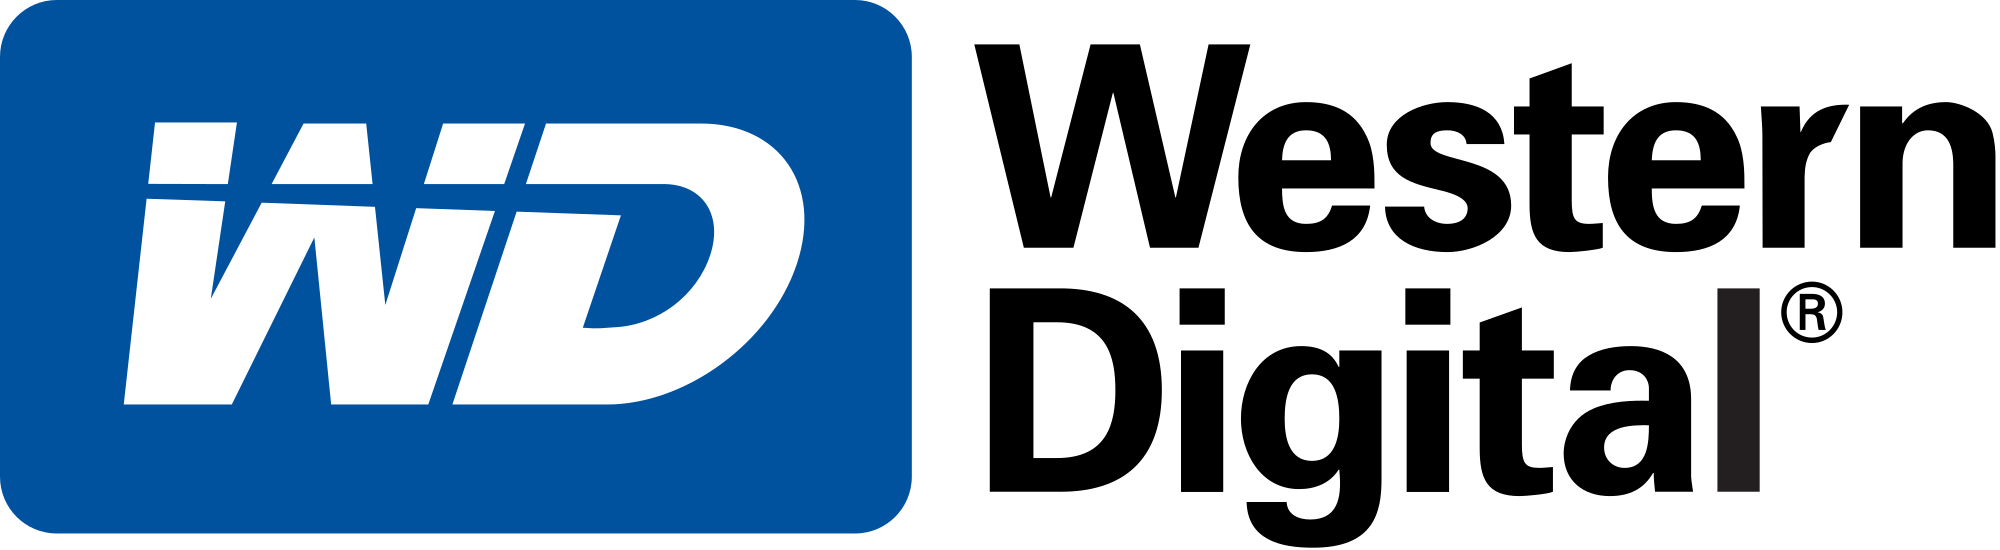 Logo for Western Digital